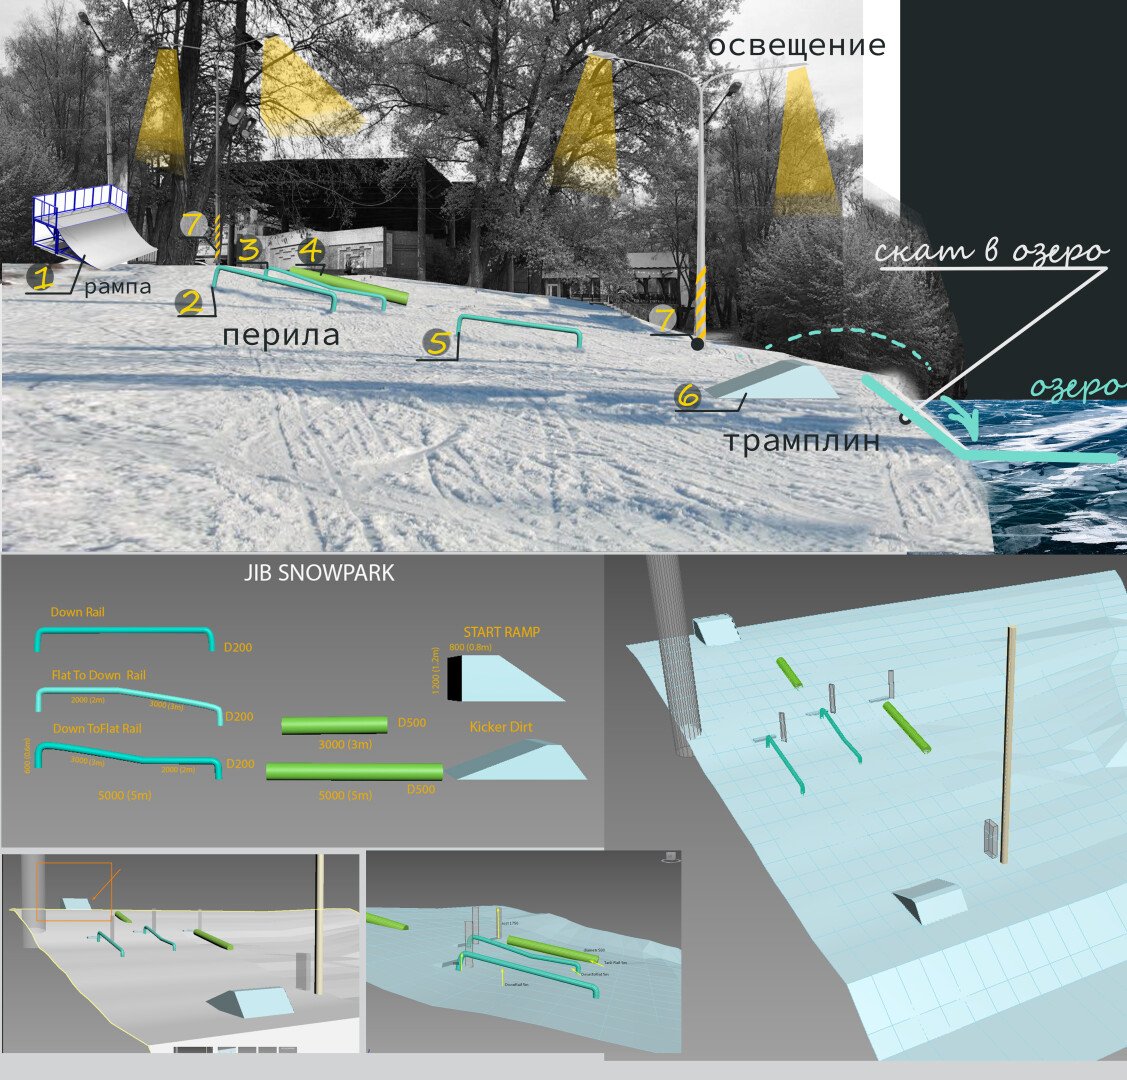 У Чернігові з’явиться парк для сноубордистів. Де він буде і коли відкриється, фото-2